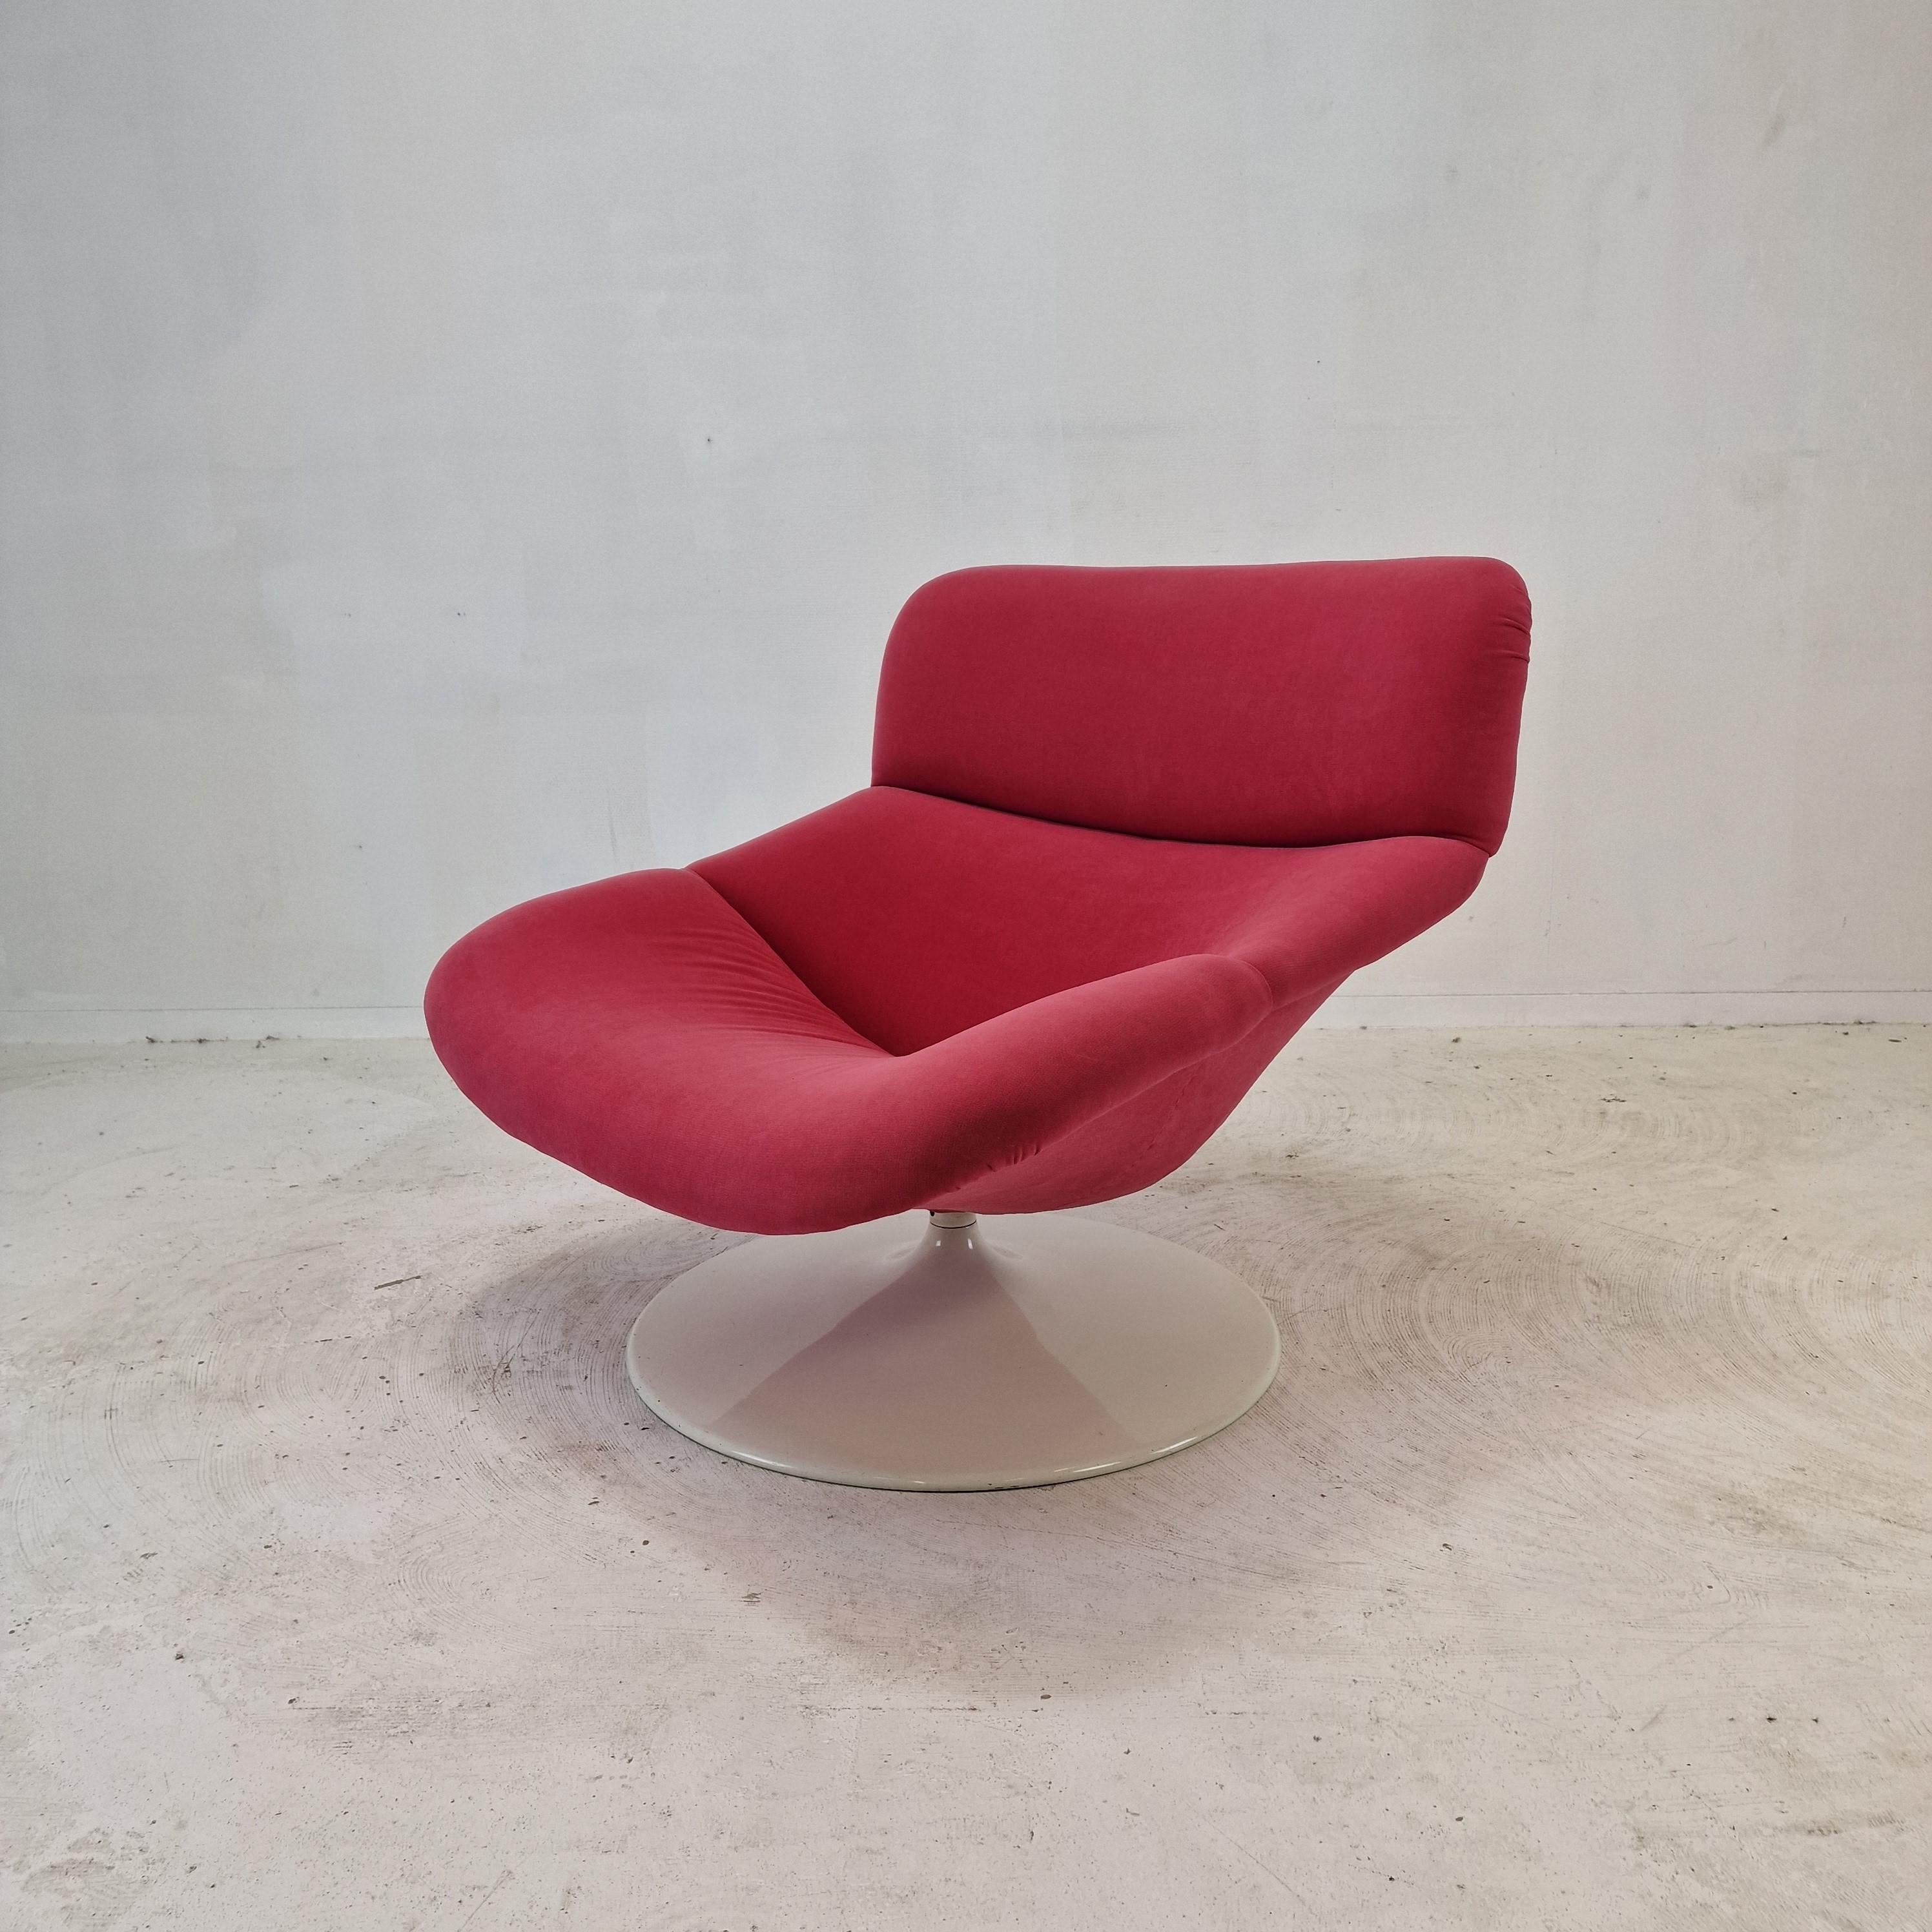 Chaise longue Artifort F518 extrêmement confortable.  
Conçu par le célèbre designer anglais Geoffrey Harcourt dans les années 70.   

Cadre en bois très solide avec un grand pied métallique pivotant.  
La chaise est en tissu de laine de haute